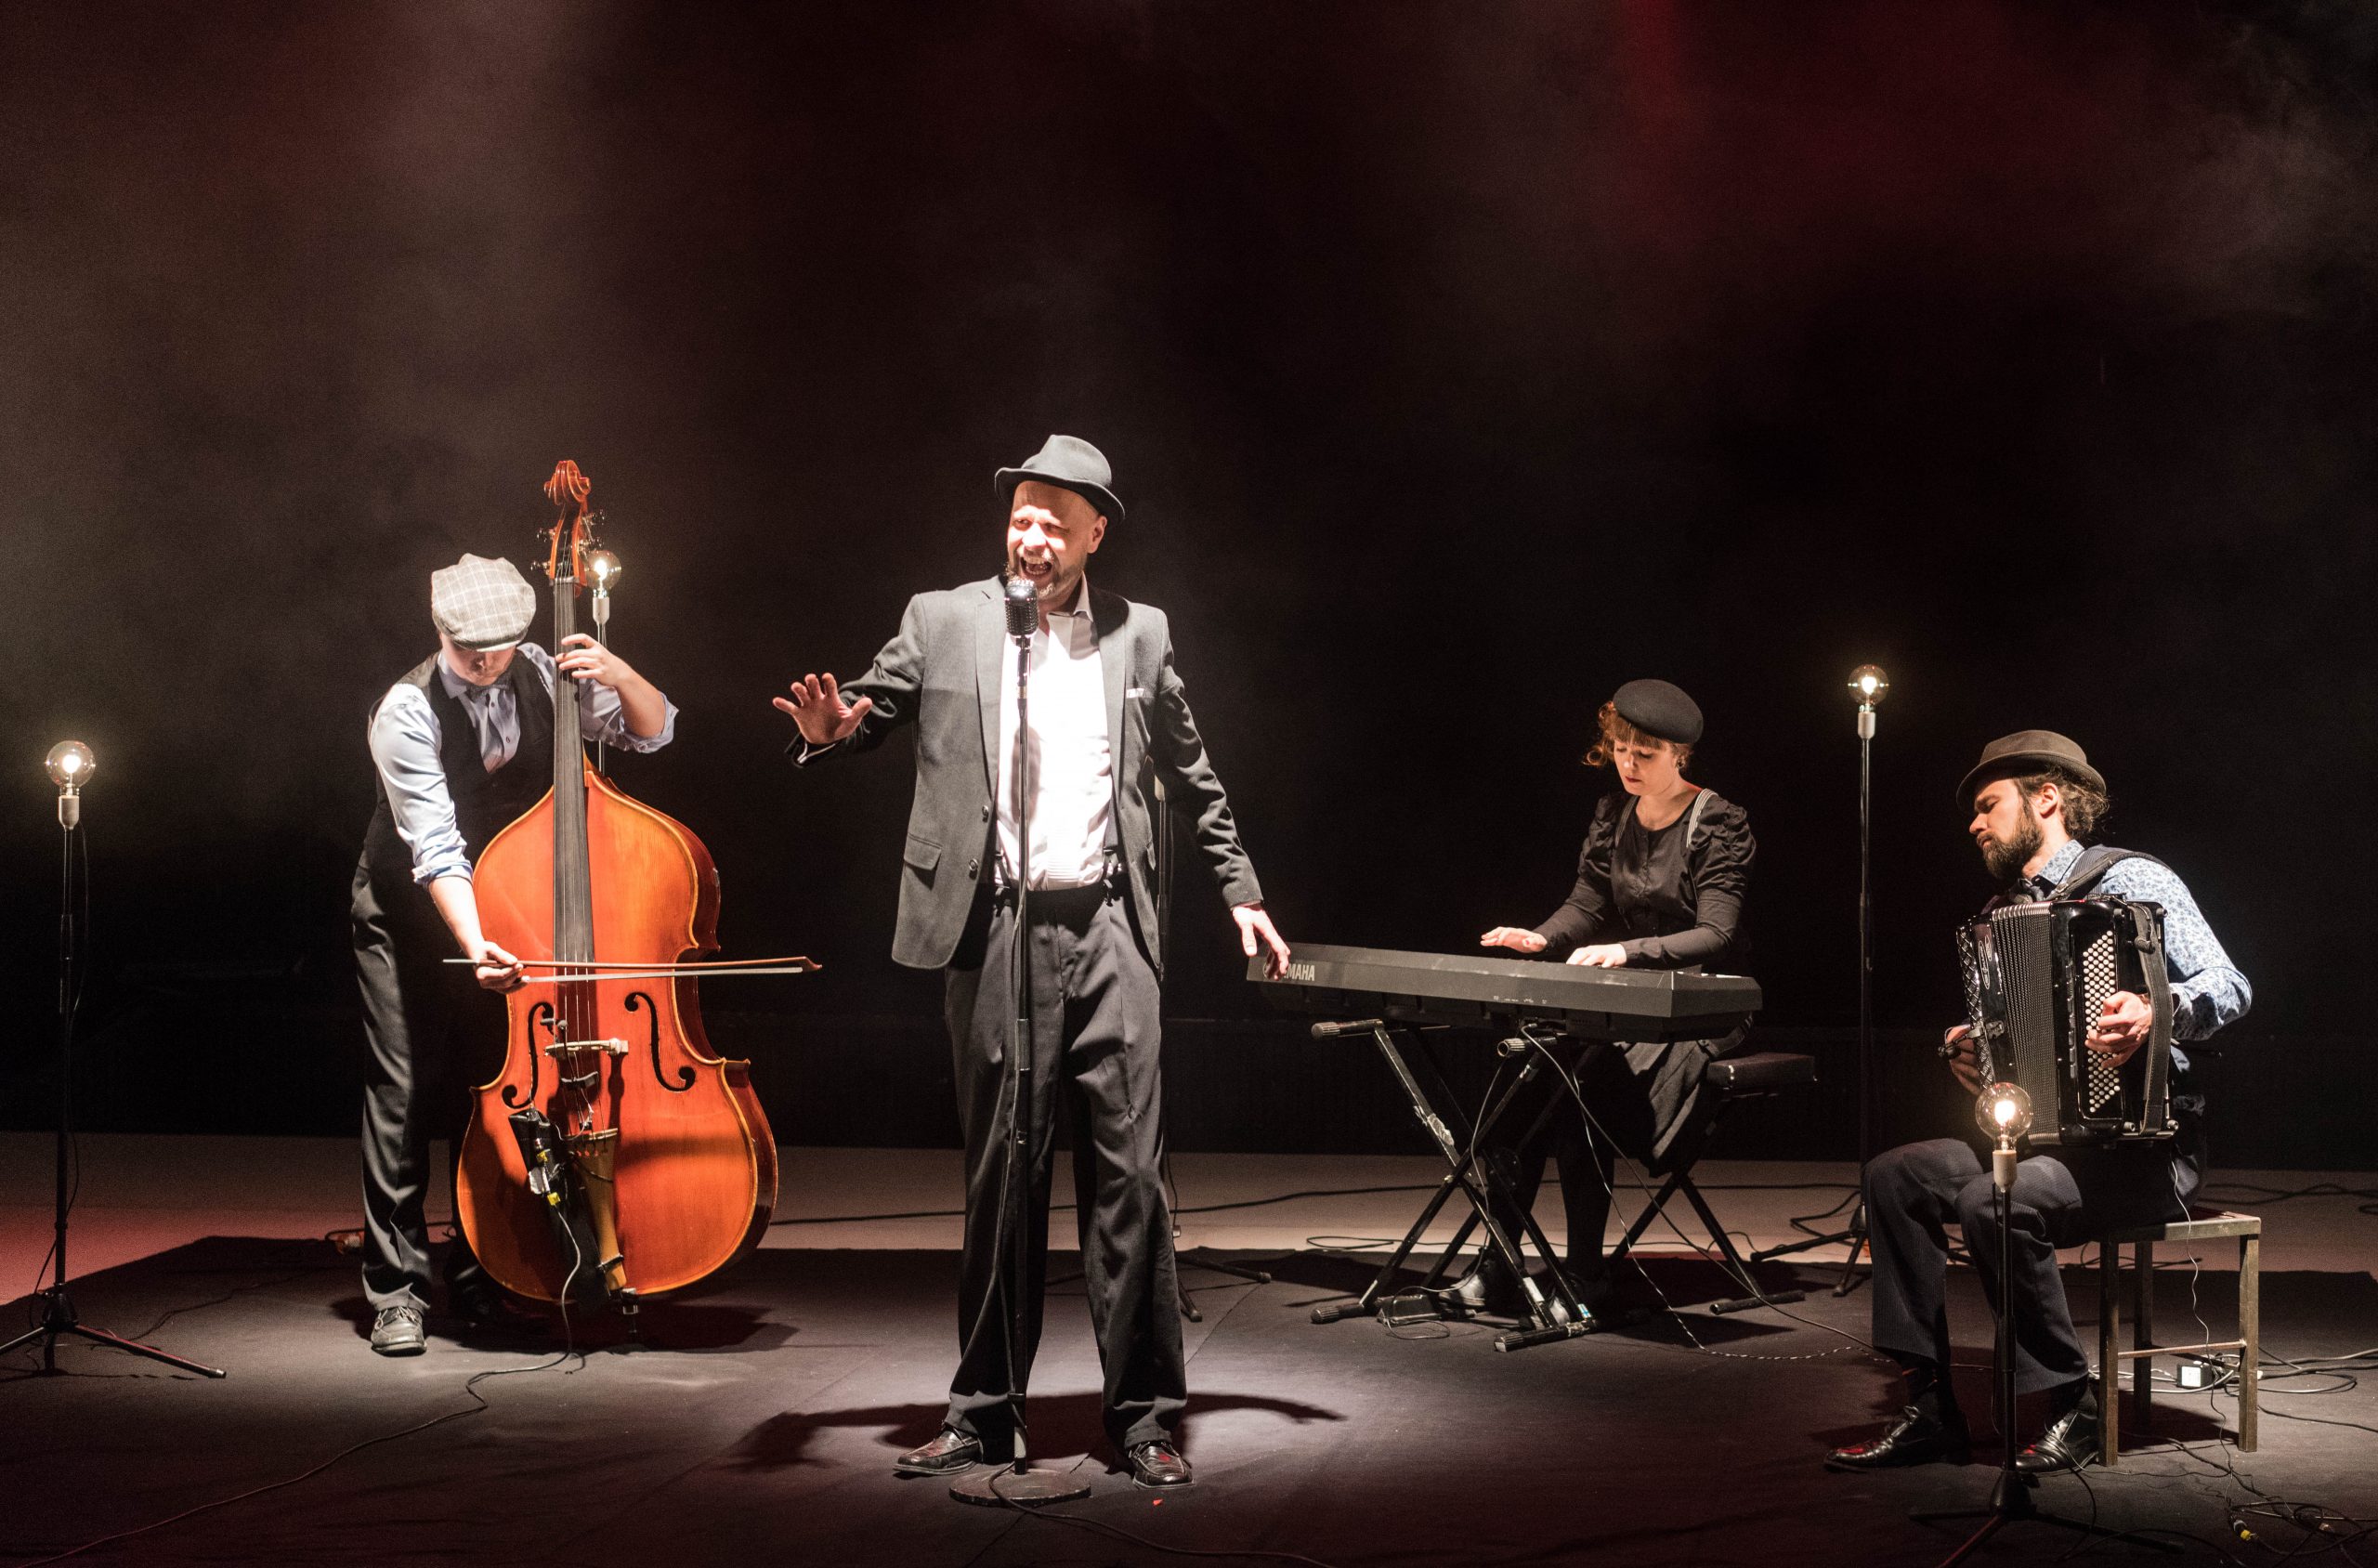 kolme muusikkoa ja yksi laulaja. vasemmalla basisti, keskellä takana pianisti, oikealla haitaristi ja keskellä edessä laulaja laulaa. kaikki ovat pukeutuneet 30-luvun vaatteisiin.